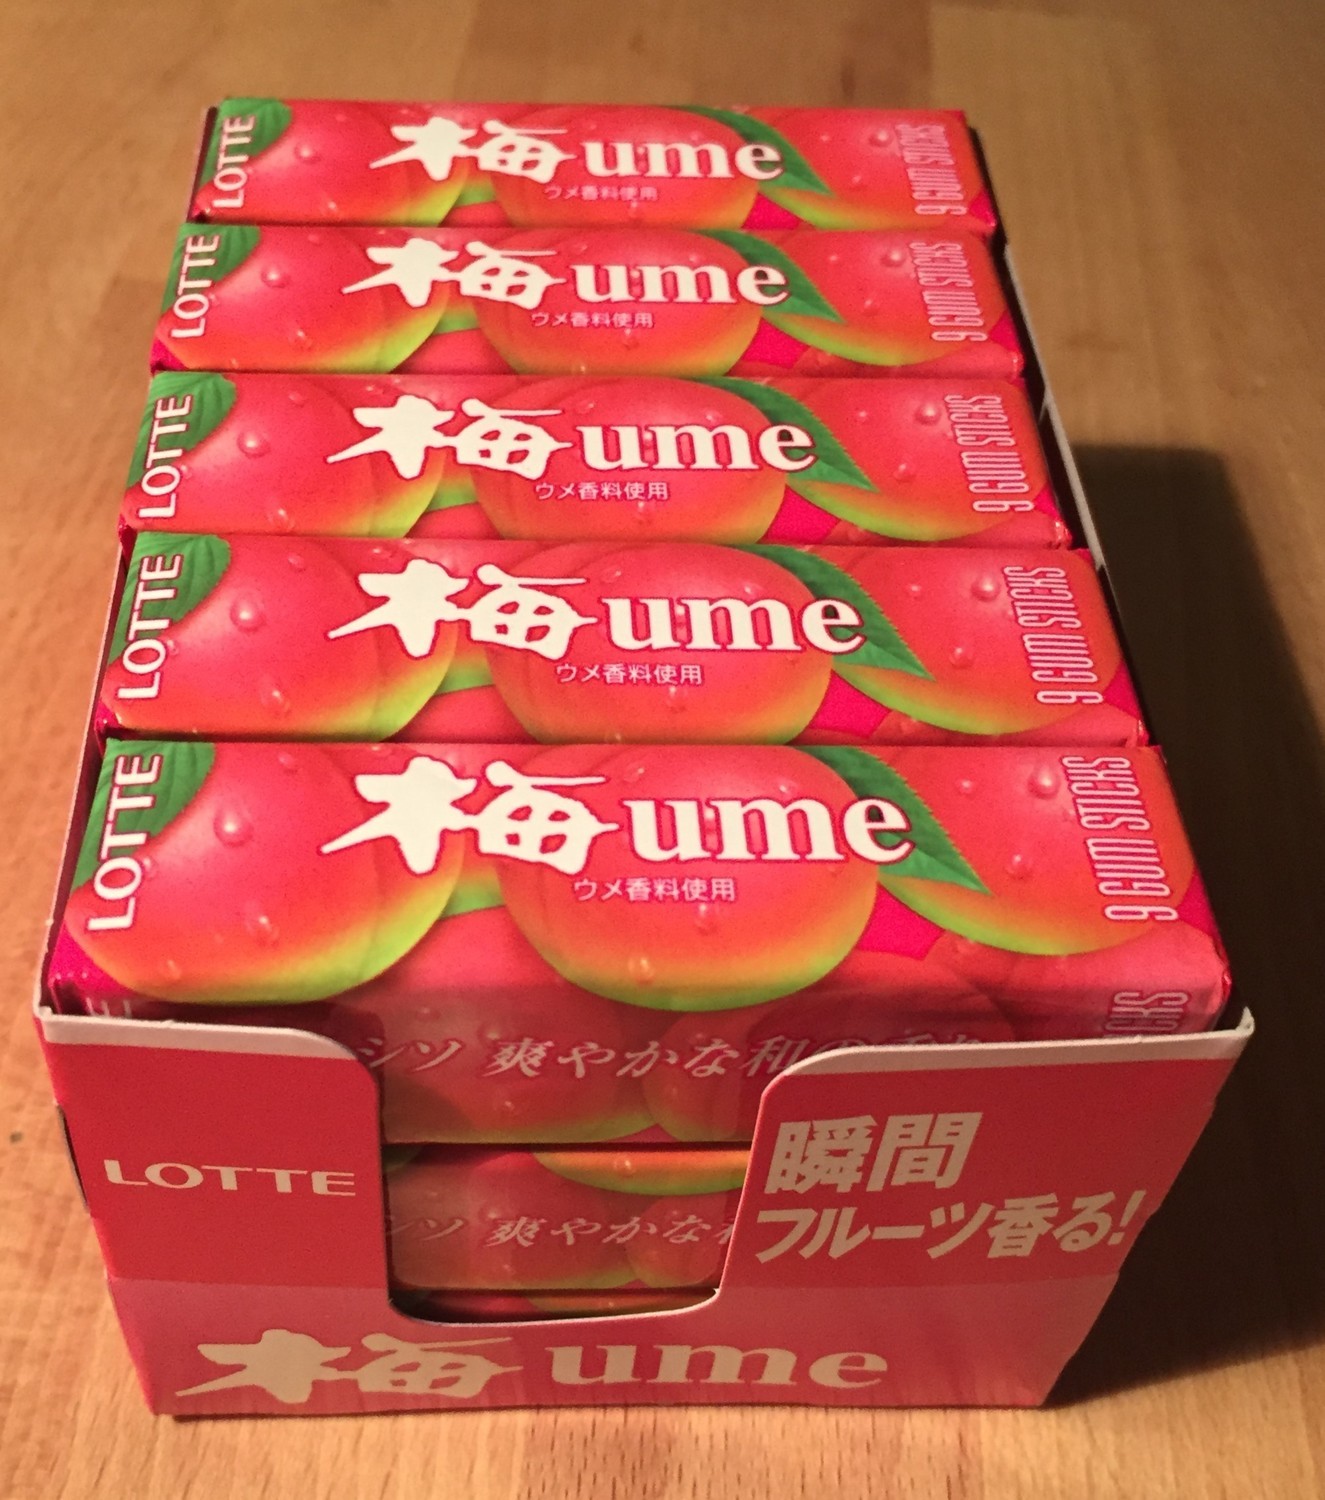 Lotte, Chewing Gum, "Ume" 9 gum sticks x 15